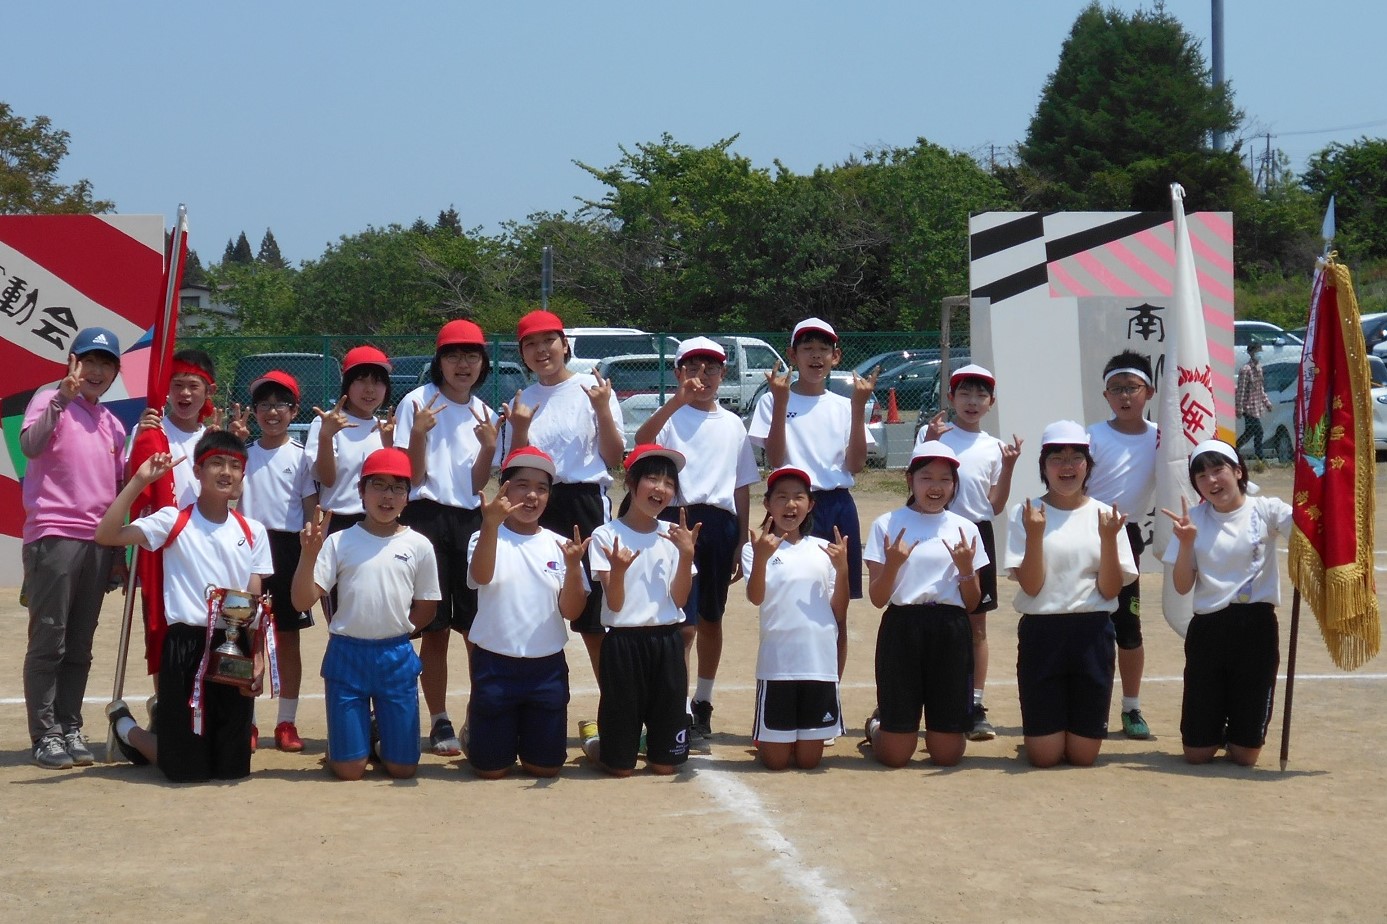 五月晴れの運動会 南郷小学校のブログ